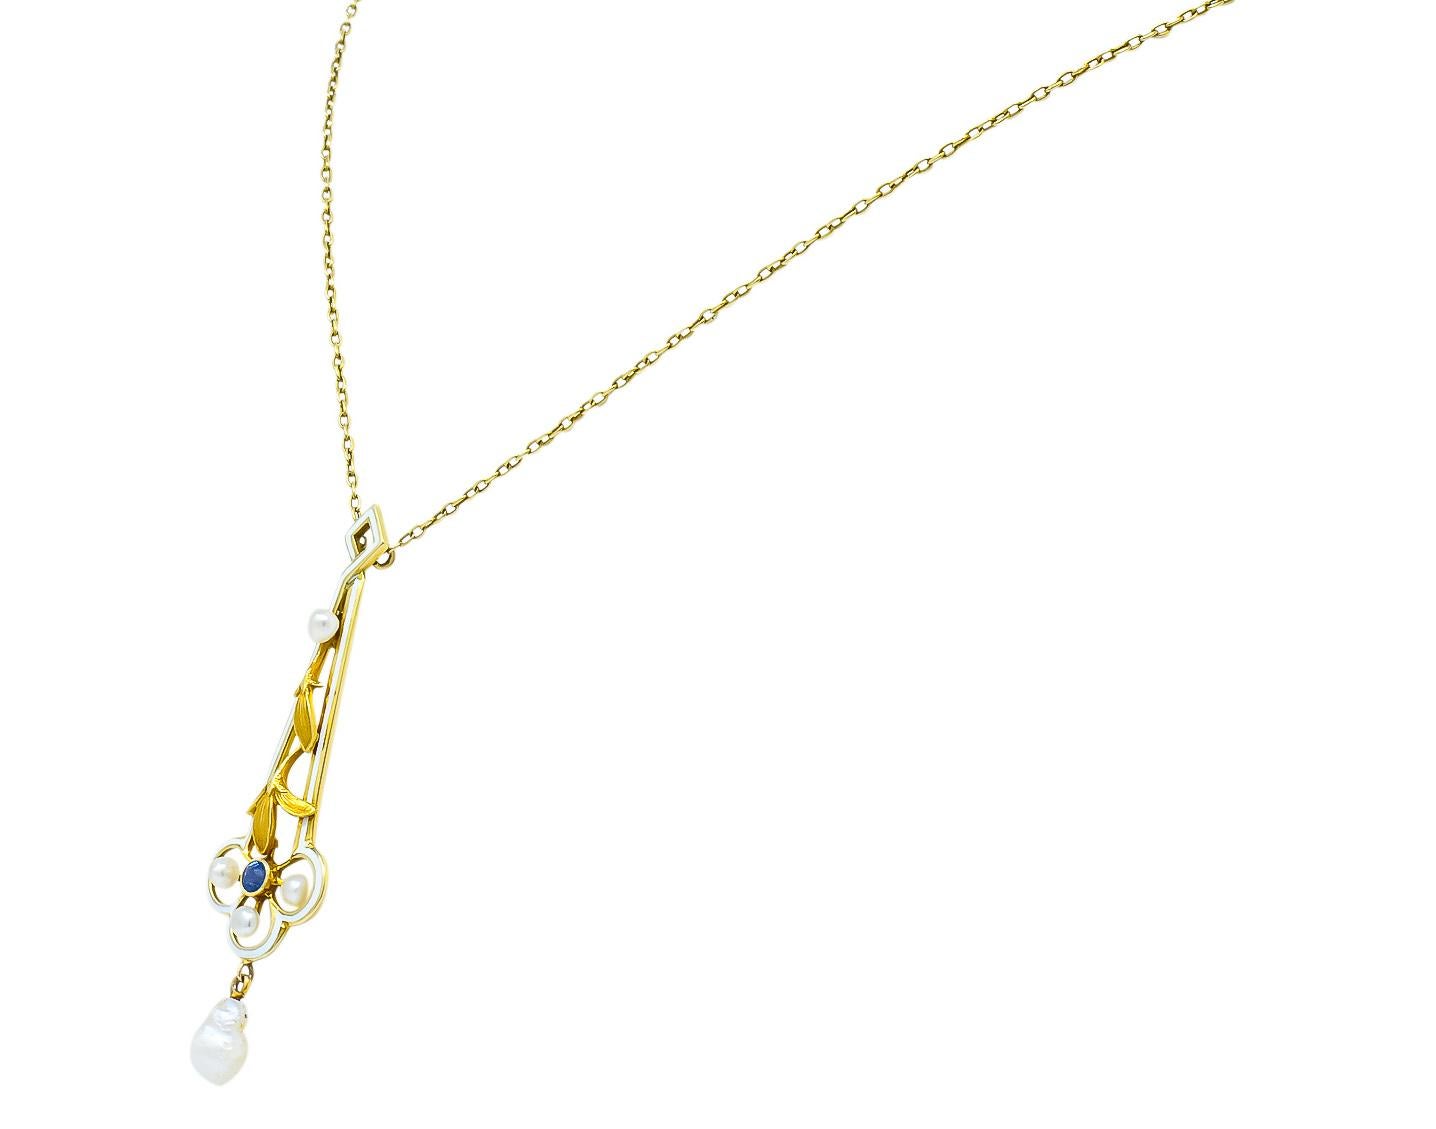 Women's or Men's A.J. Hedges & Co. 1905 Art Nouveau Enamel Sapphire Pearl 14 Karat Gold Necklace